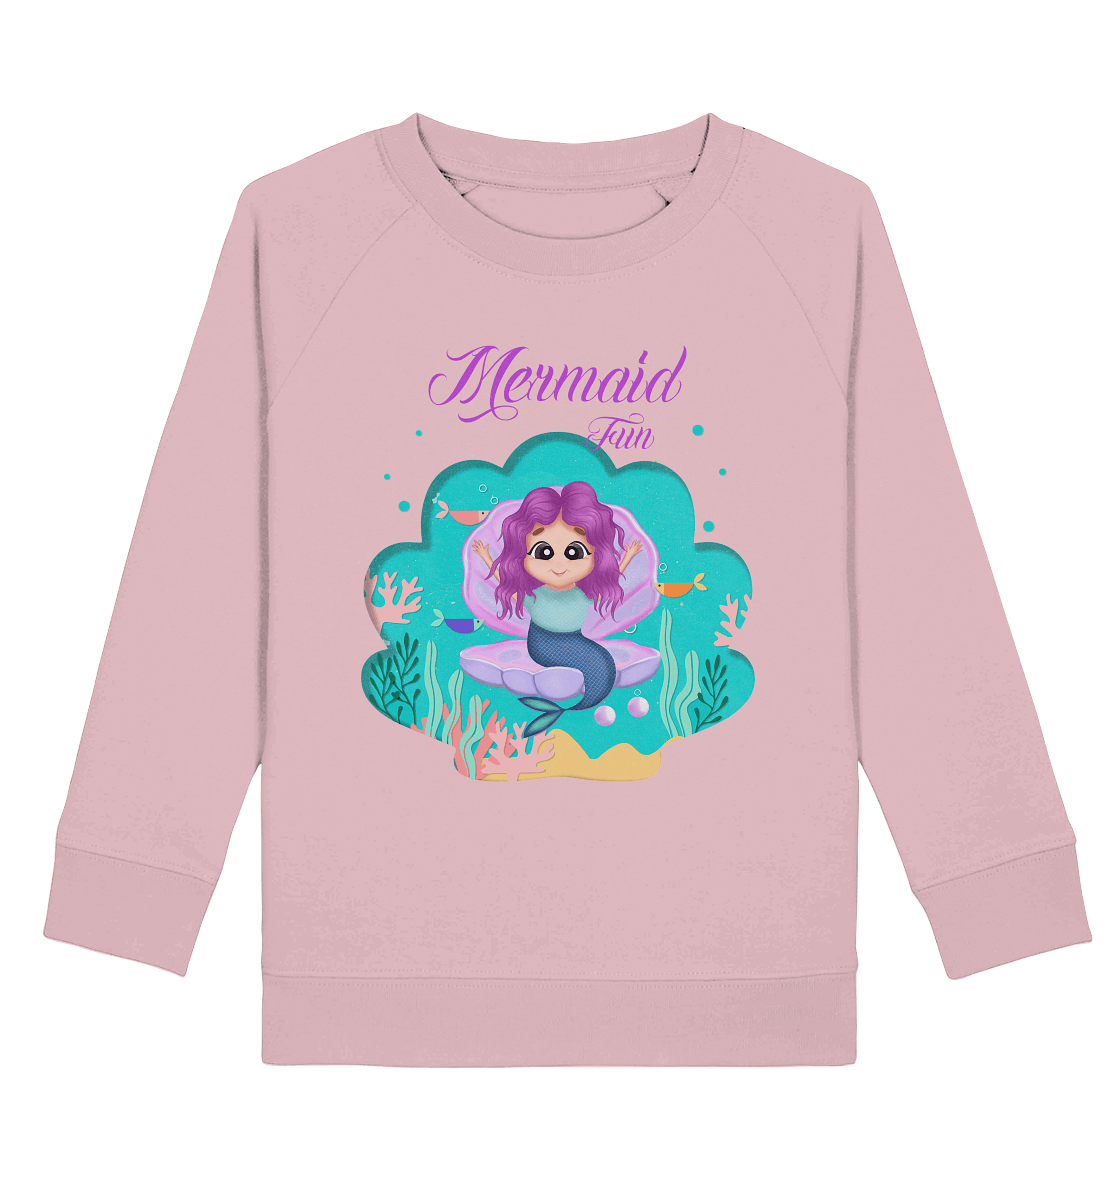 Meerjungfrau Sweatshirt Mermaid Fun arielle als baby Meerjungfrau cartoon bloominic Sweatshirt in rosa 